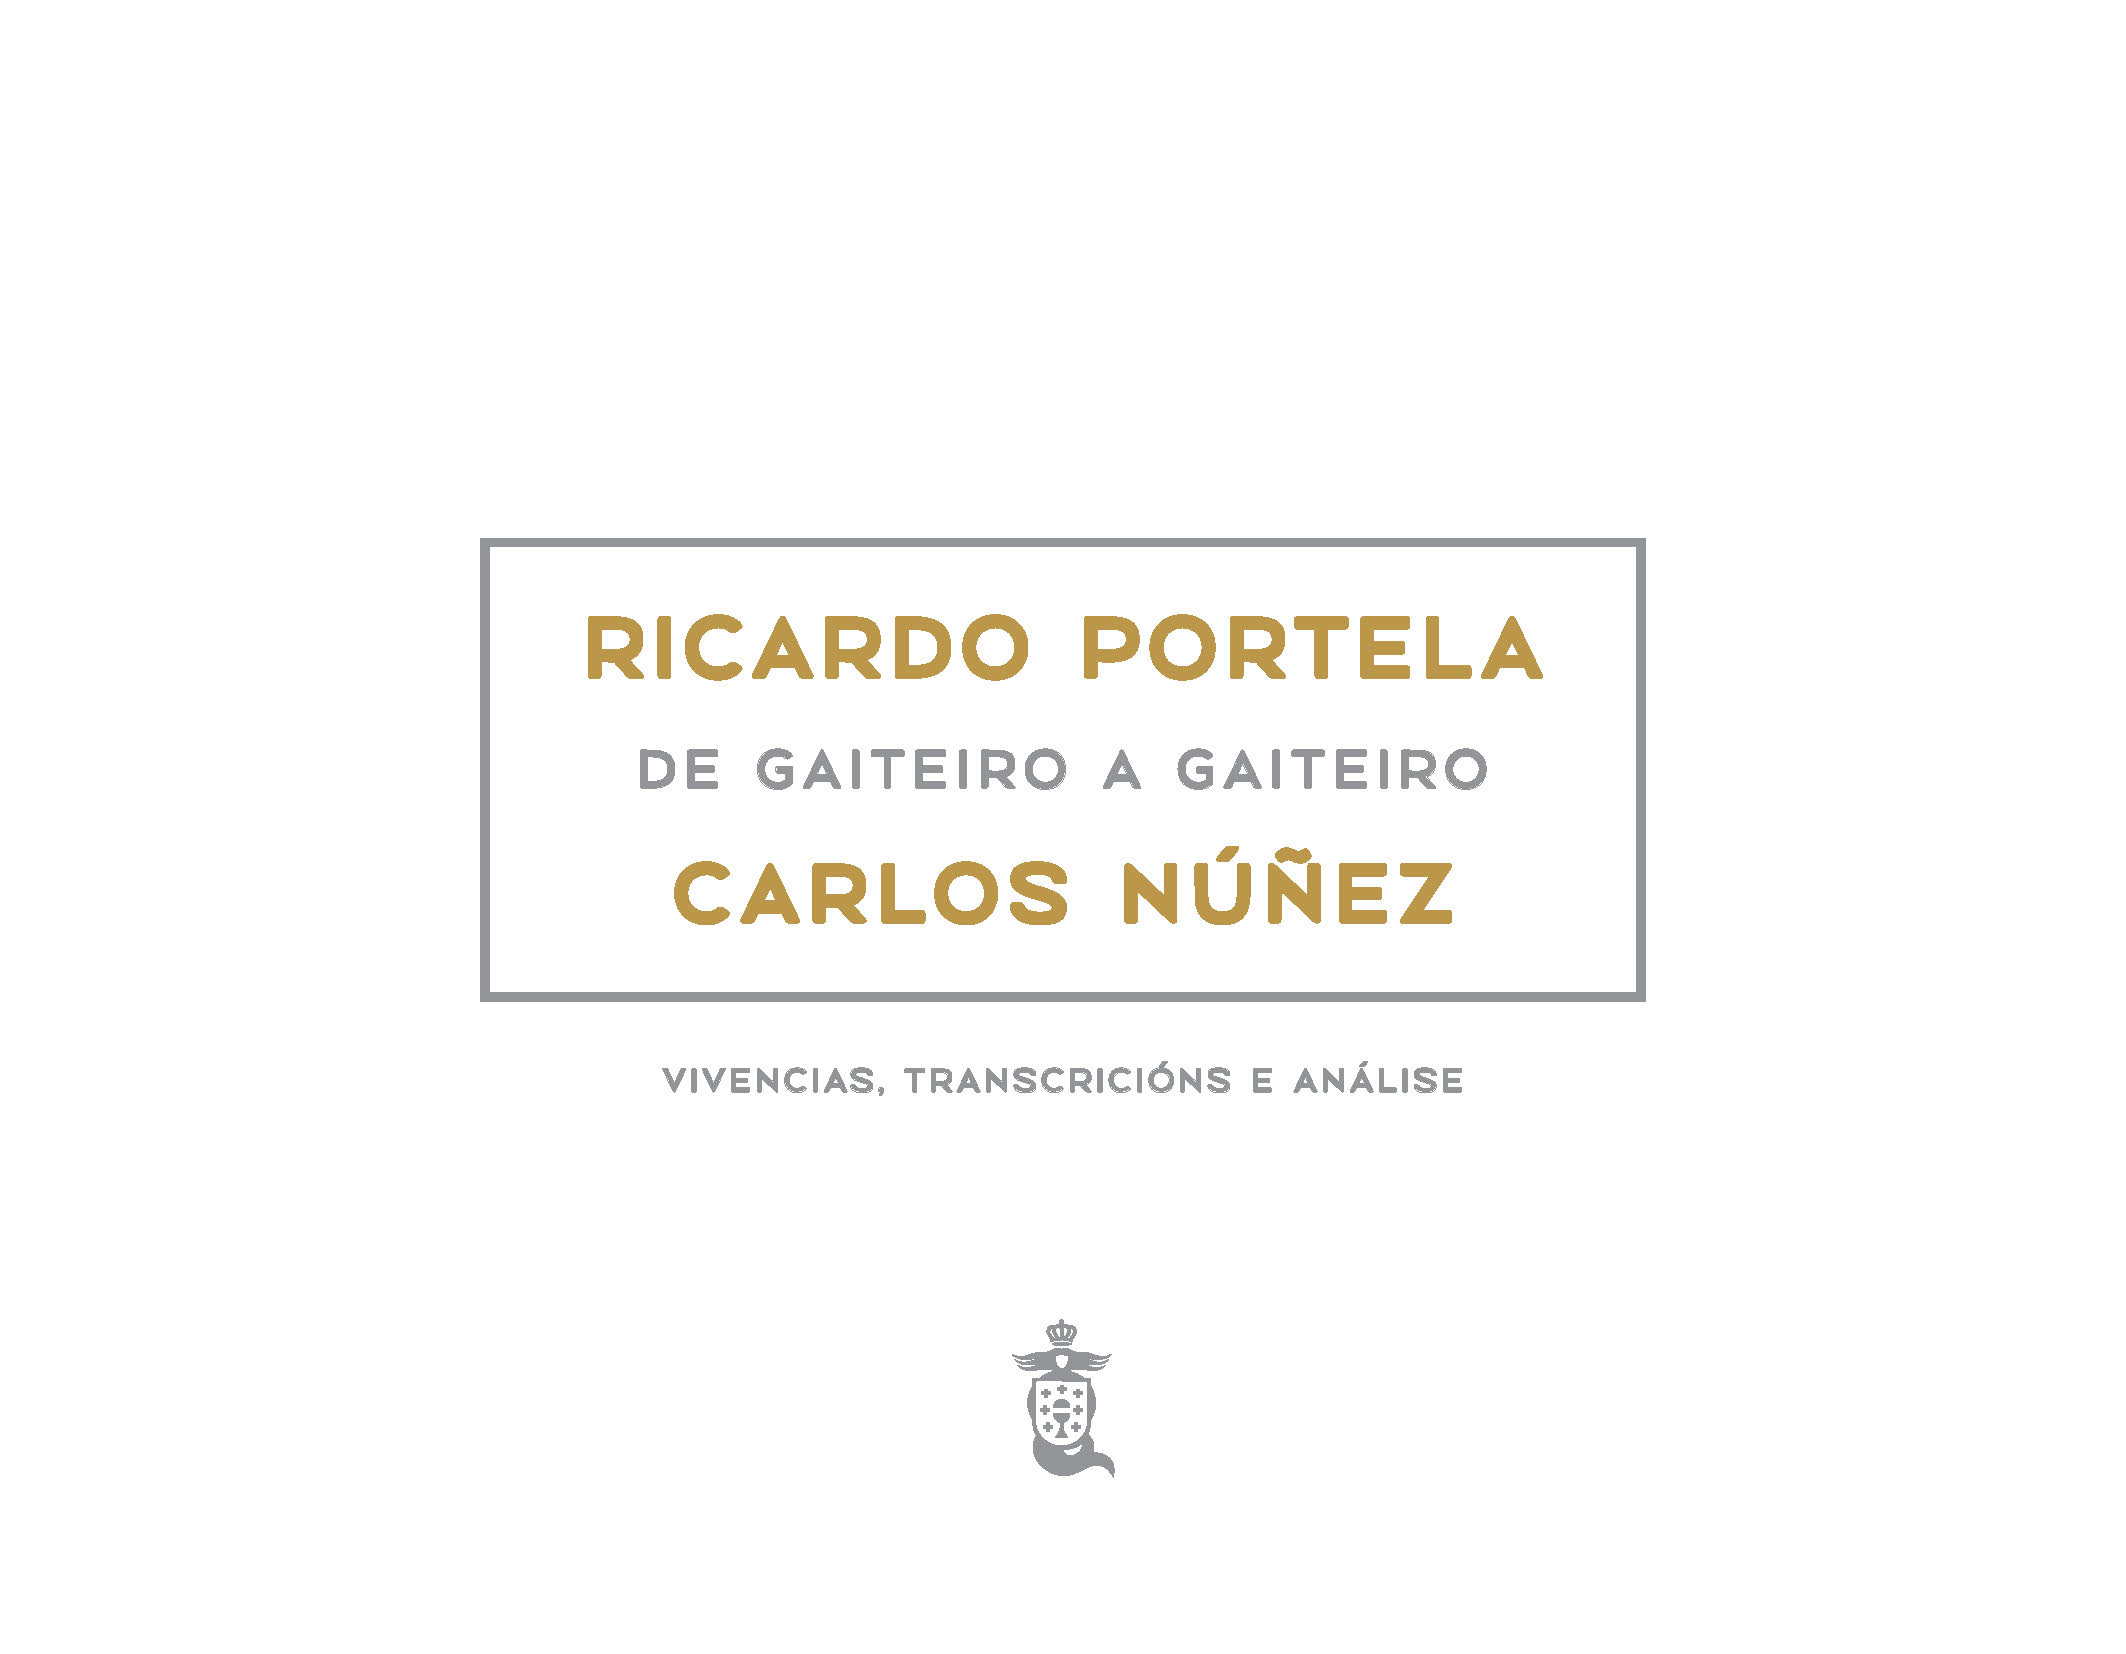 RICARDO PORTELA, DE GAITEIRO A GAITEIRO, CARLOS NÚÑEZ